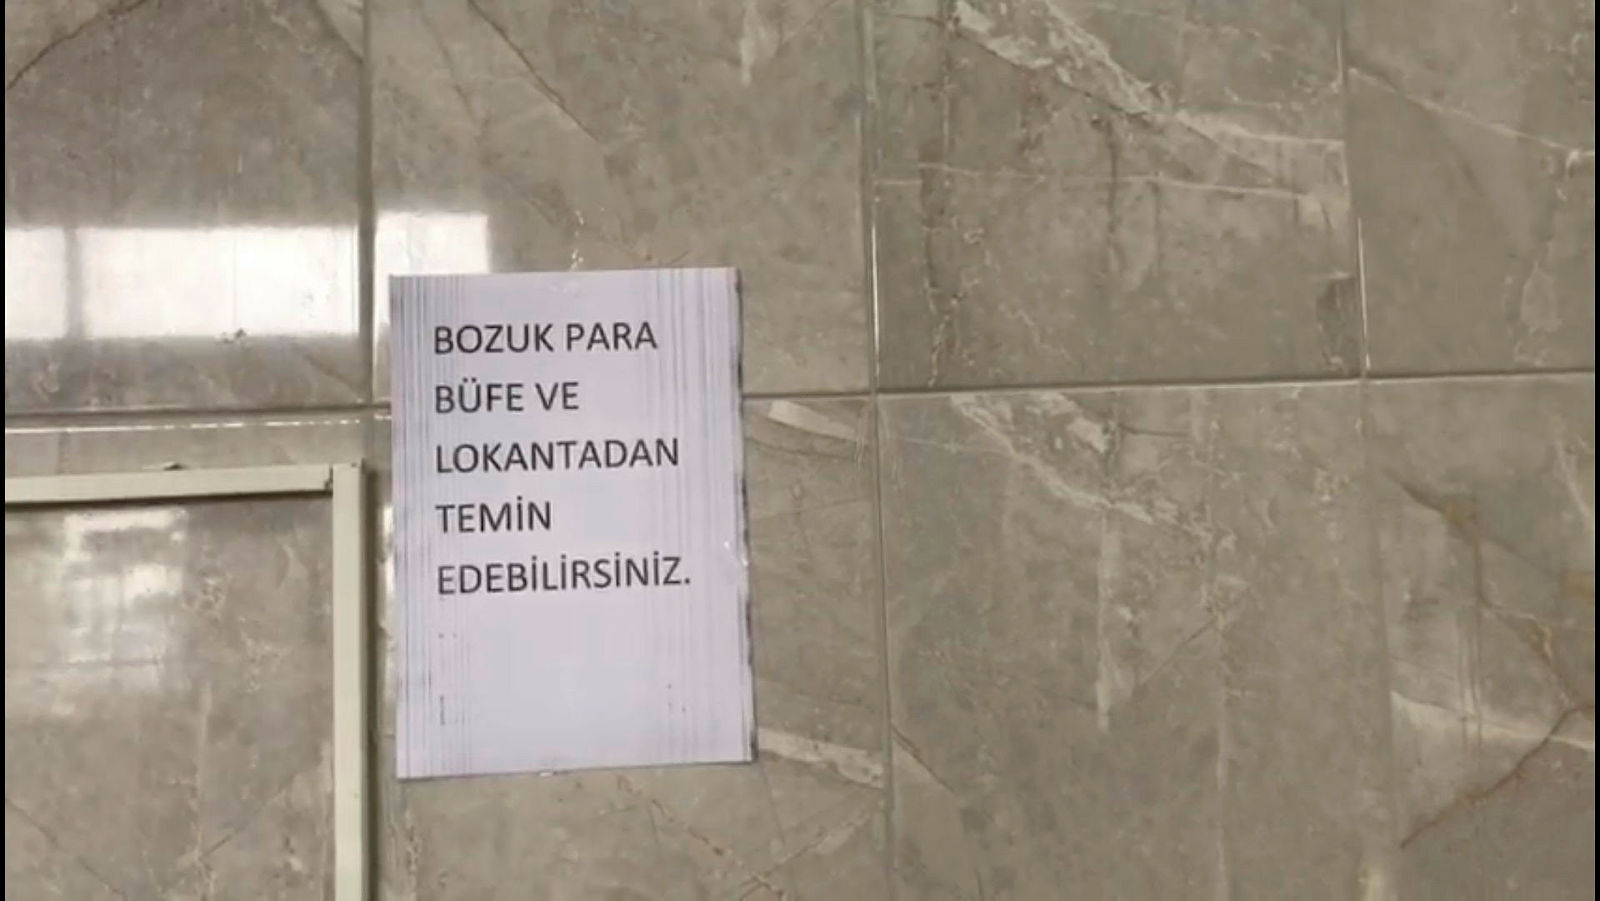 CHP’li belediyeden skandal uygulama! Emzirme odası ve mescide parayla giriliyor